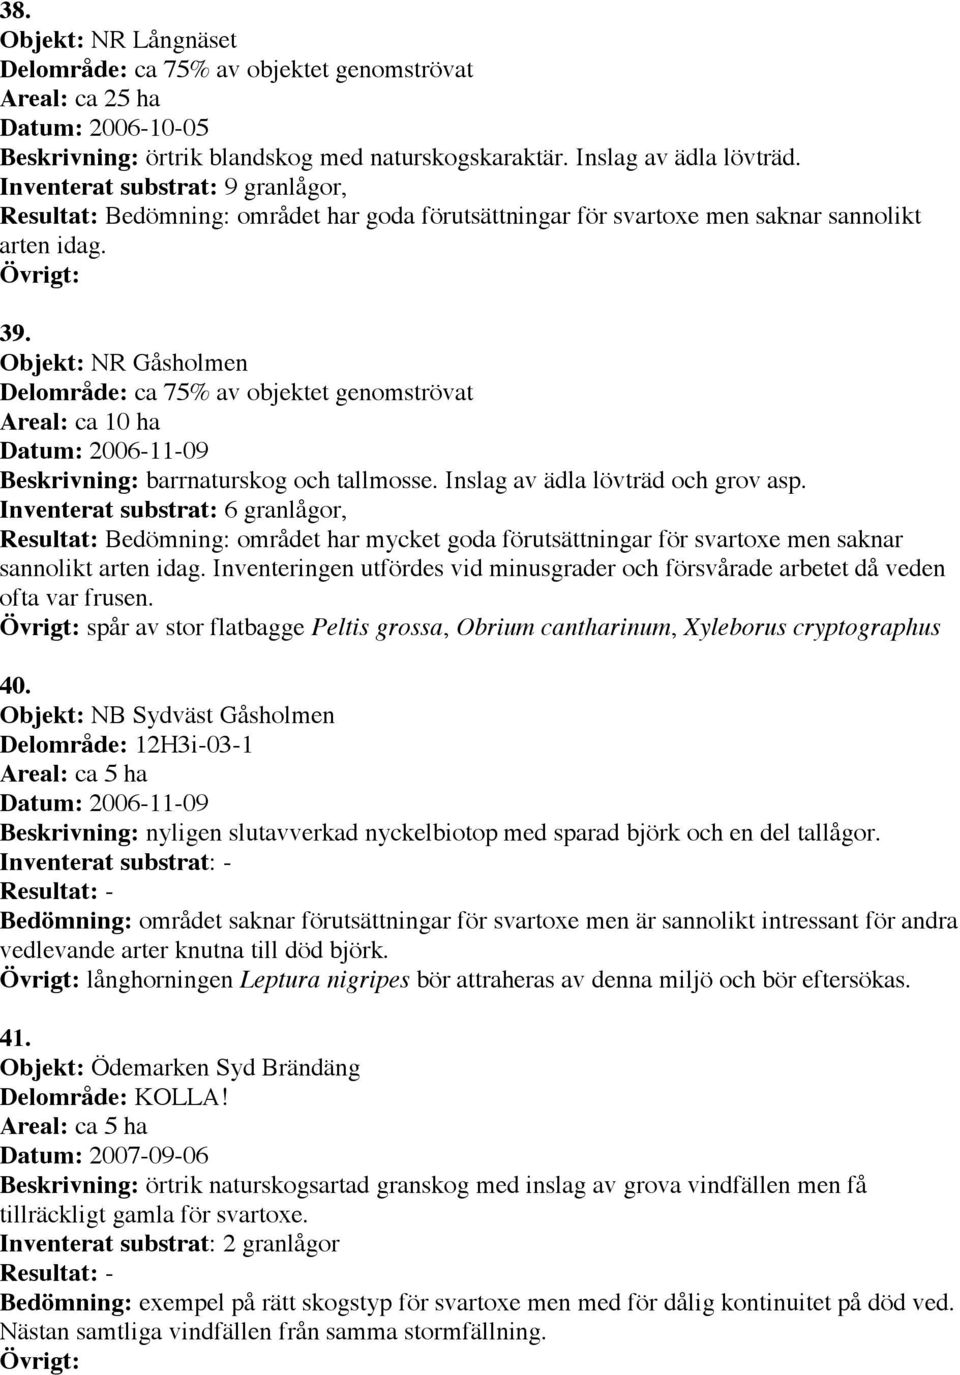 Objekt: NR Gåsholmen Delområde: ca 75% av objektet genomströvat Datum: 2006-11-09 Beskrivning: barrnaturskog och tallmosse. Inslag av ädla lövträd och grov asp.